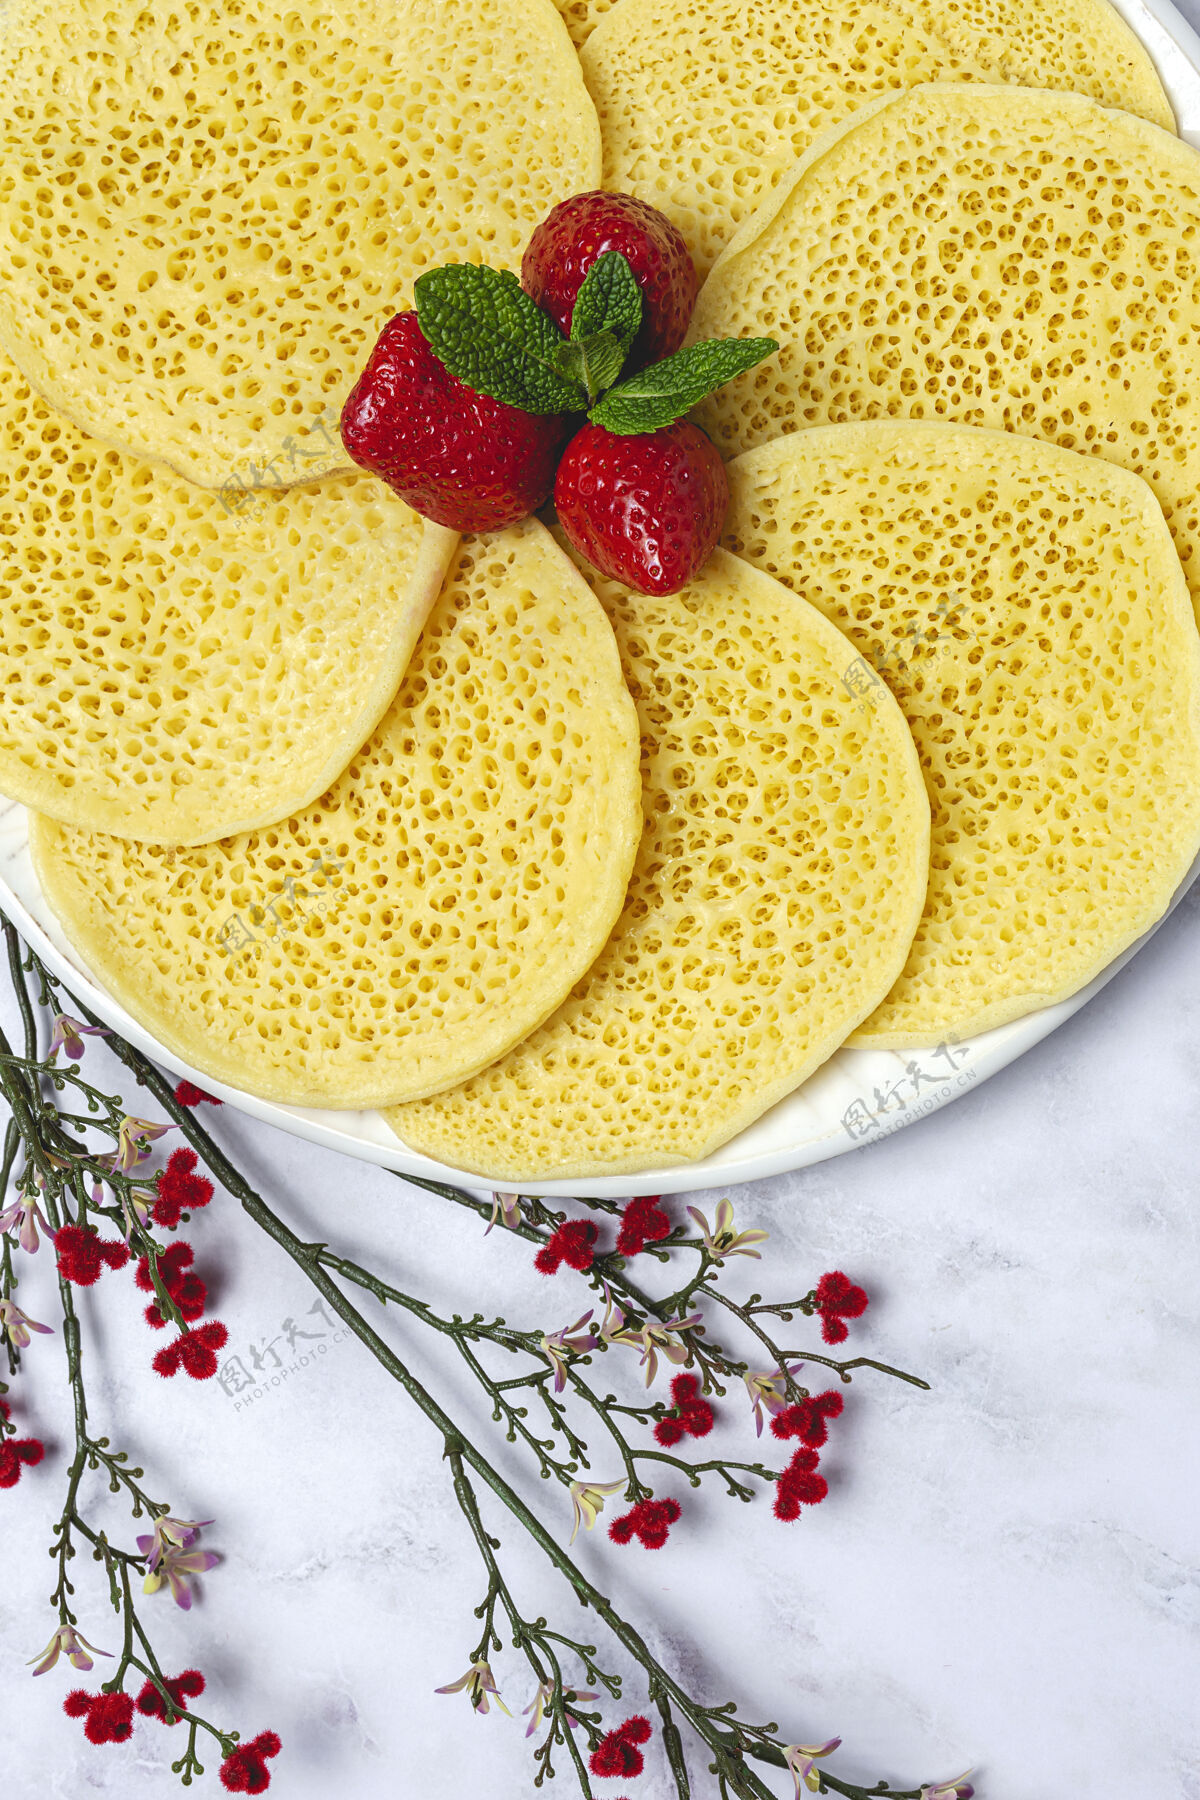 奶油奶酪用蜂蜜 草莓和薄荷自制的摩洛哥传统面包上面的摩洛哥煎饼阿拉伯语煎饼美食